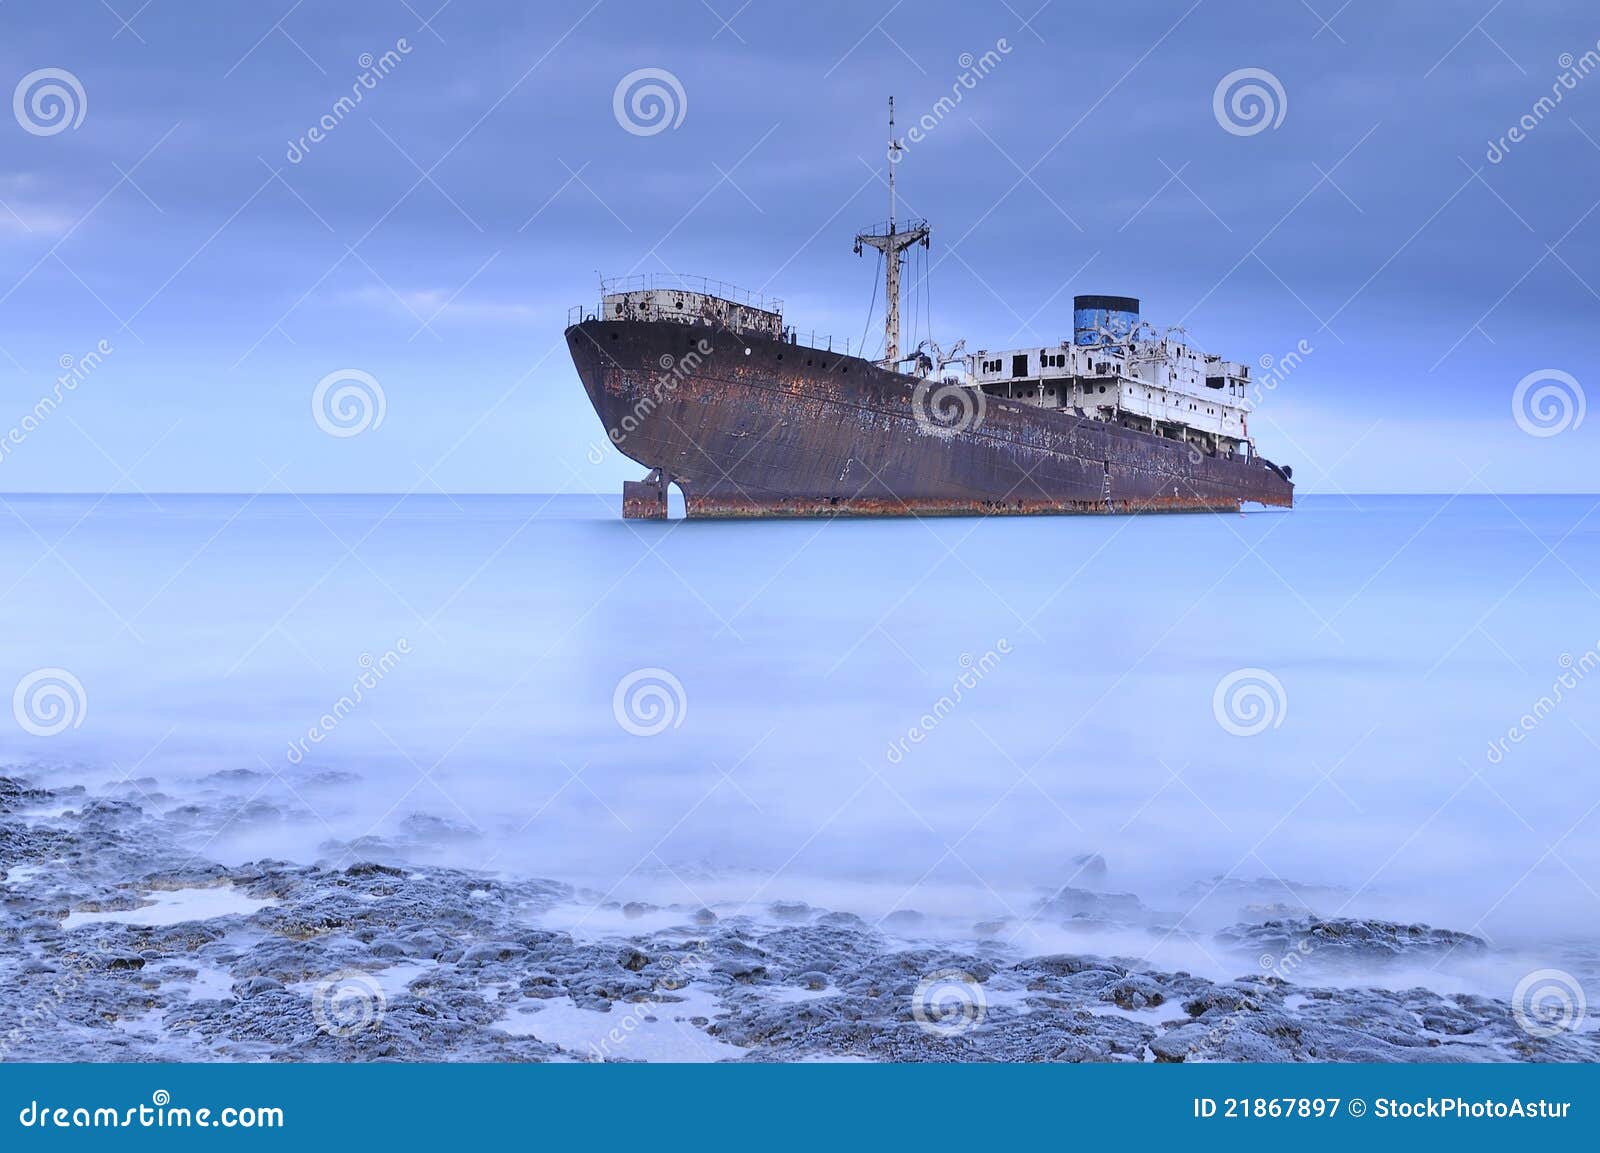 shipwreck.